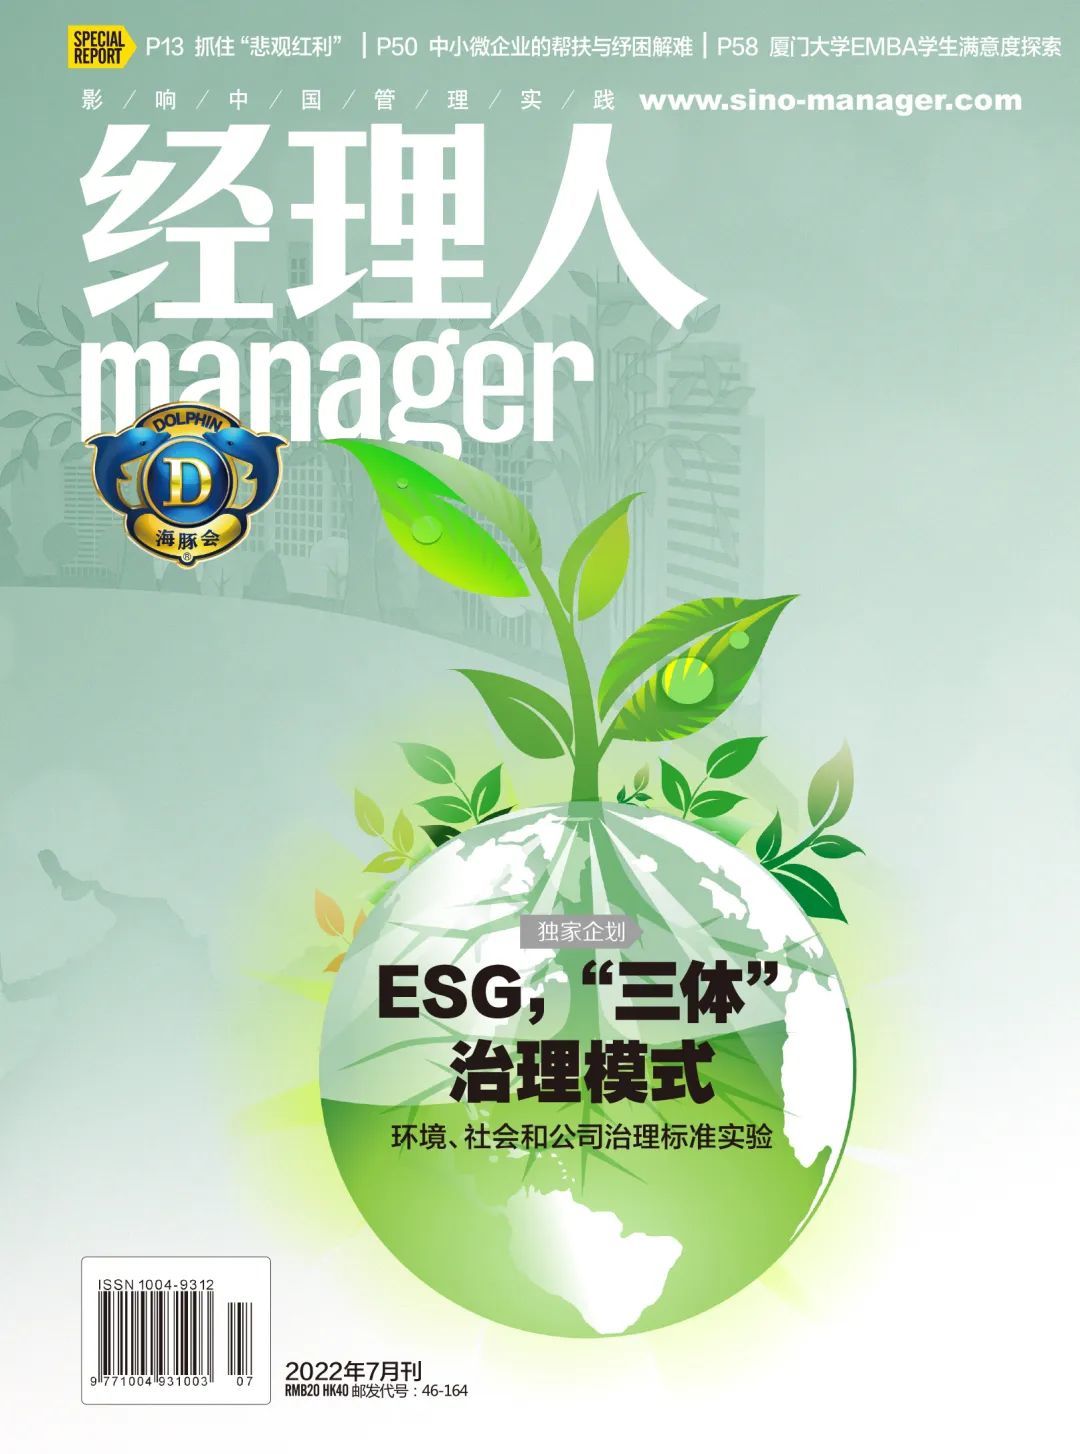 ESG，“三体”治理模式——环境、社会和公司治理标准实验